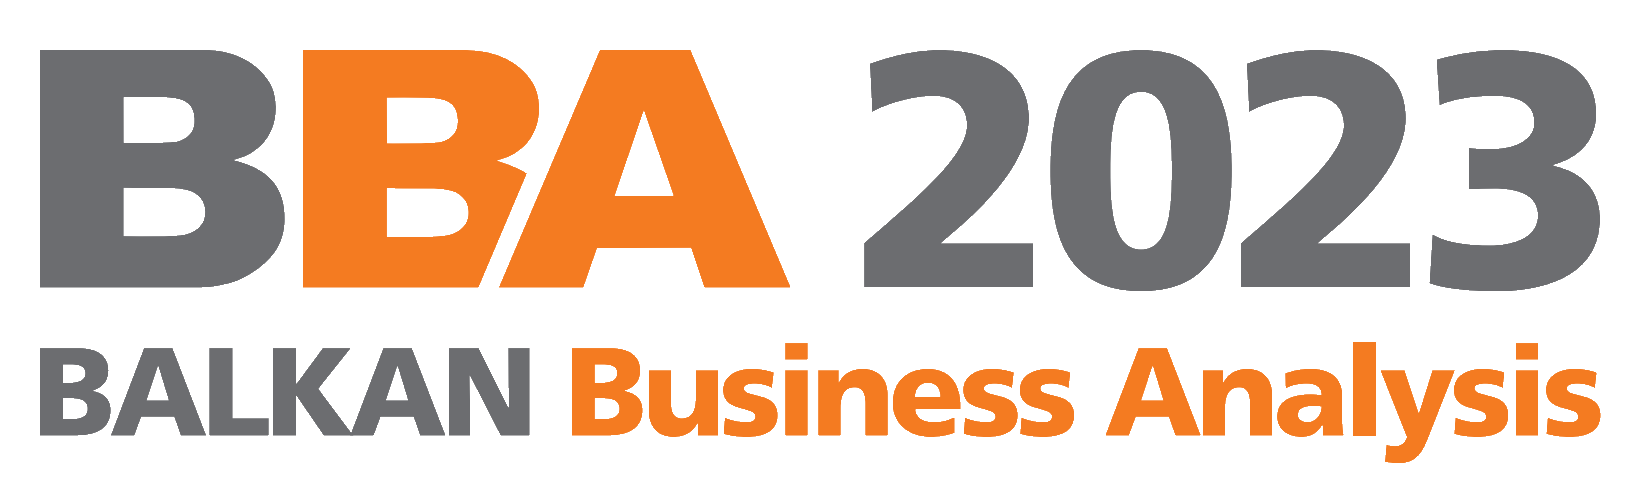 BBA 2023 logo Original Transparent